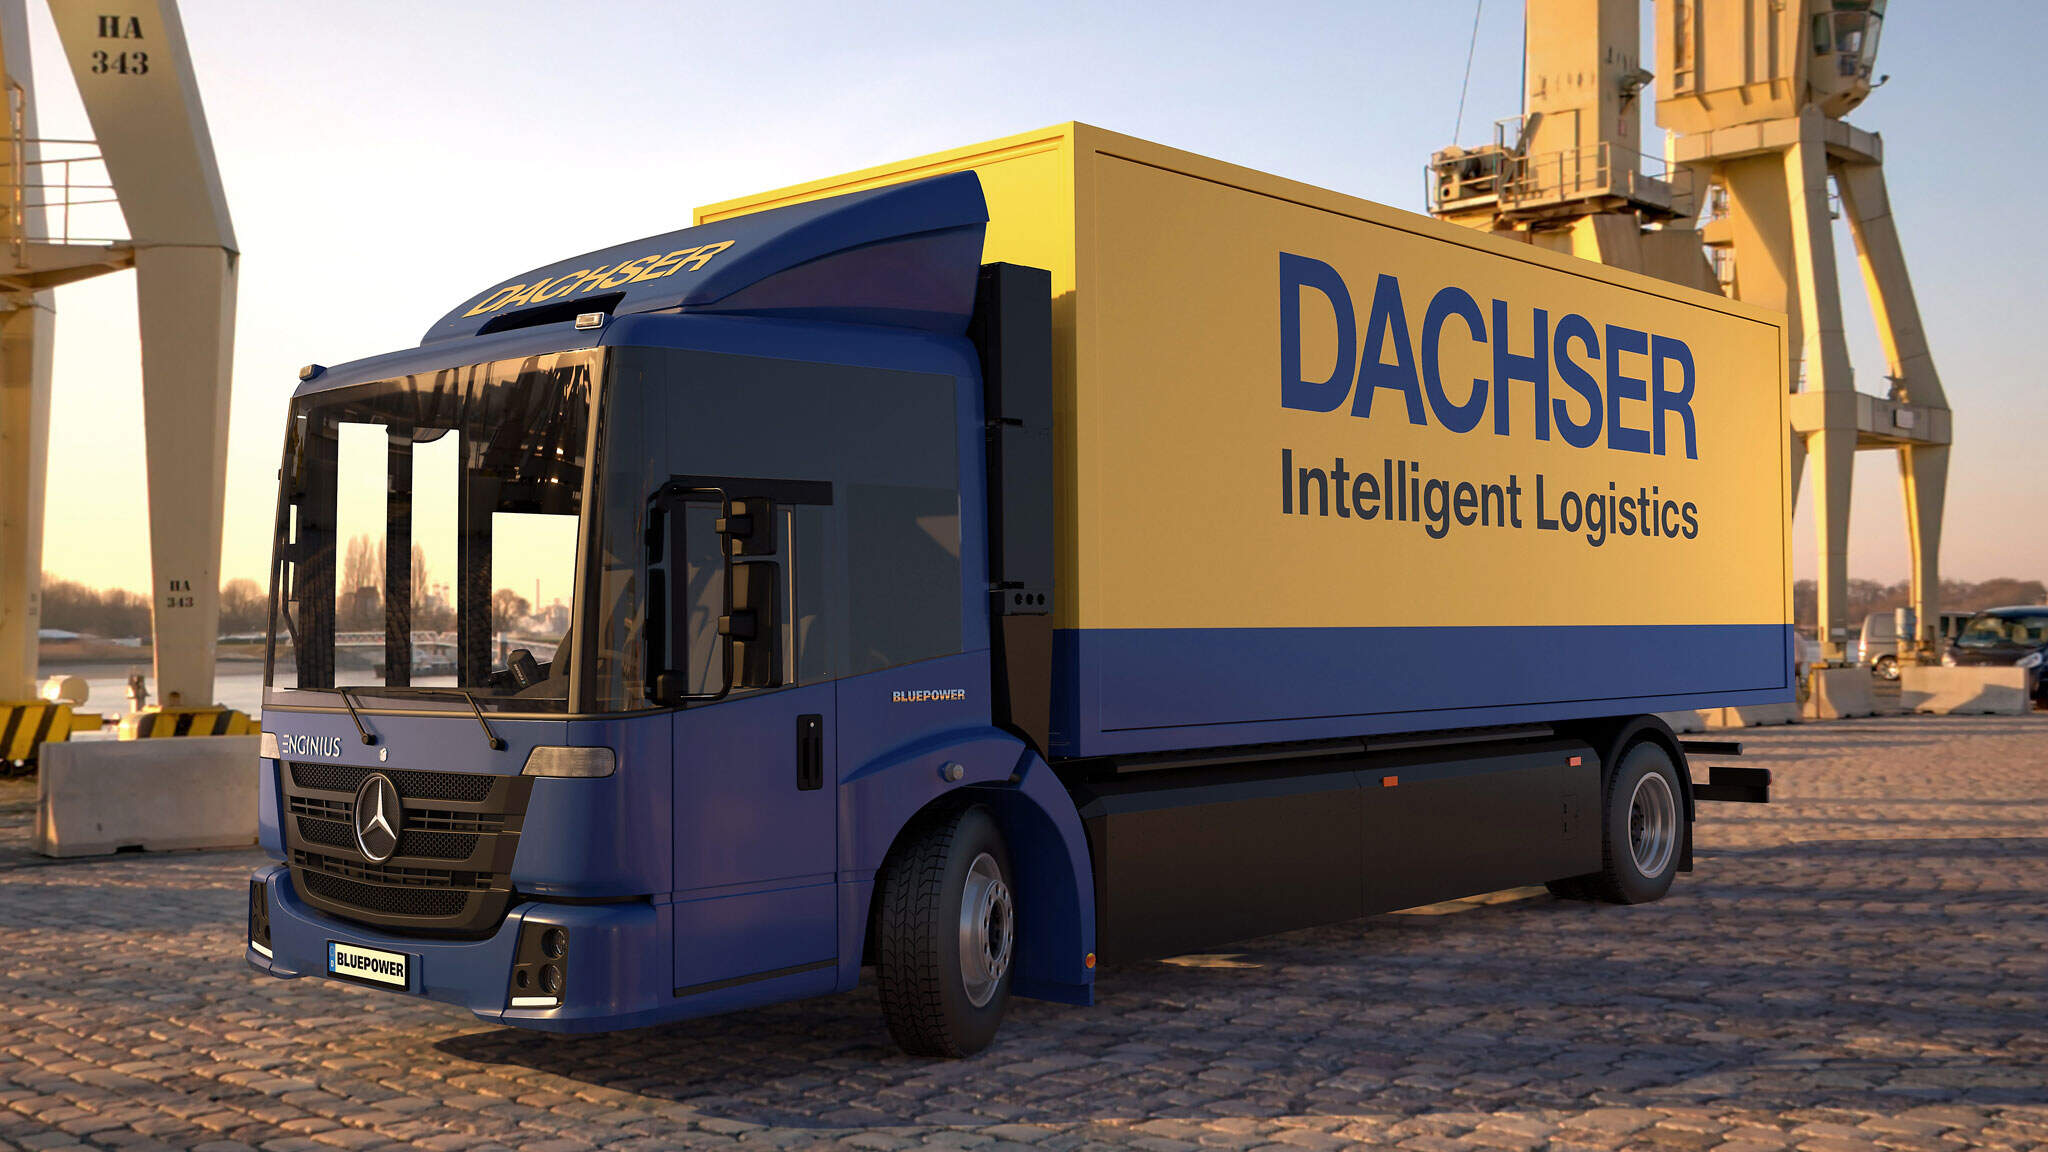 DACHSER met en service ses premiers camions à hydrogène / Source : Faun Gruppe